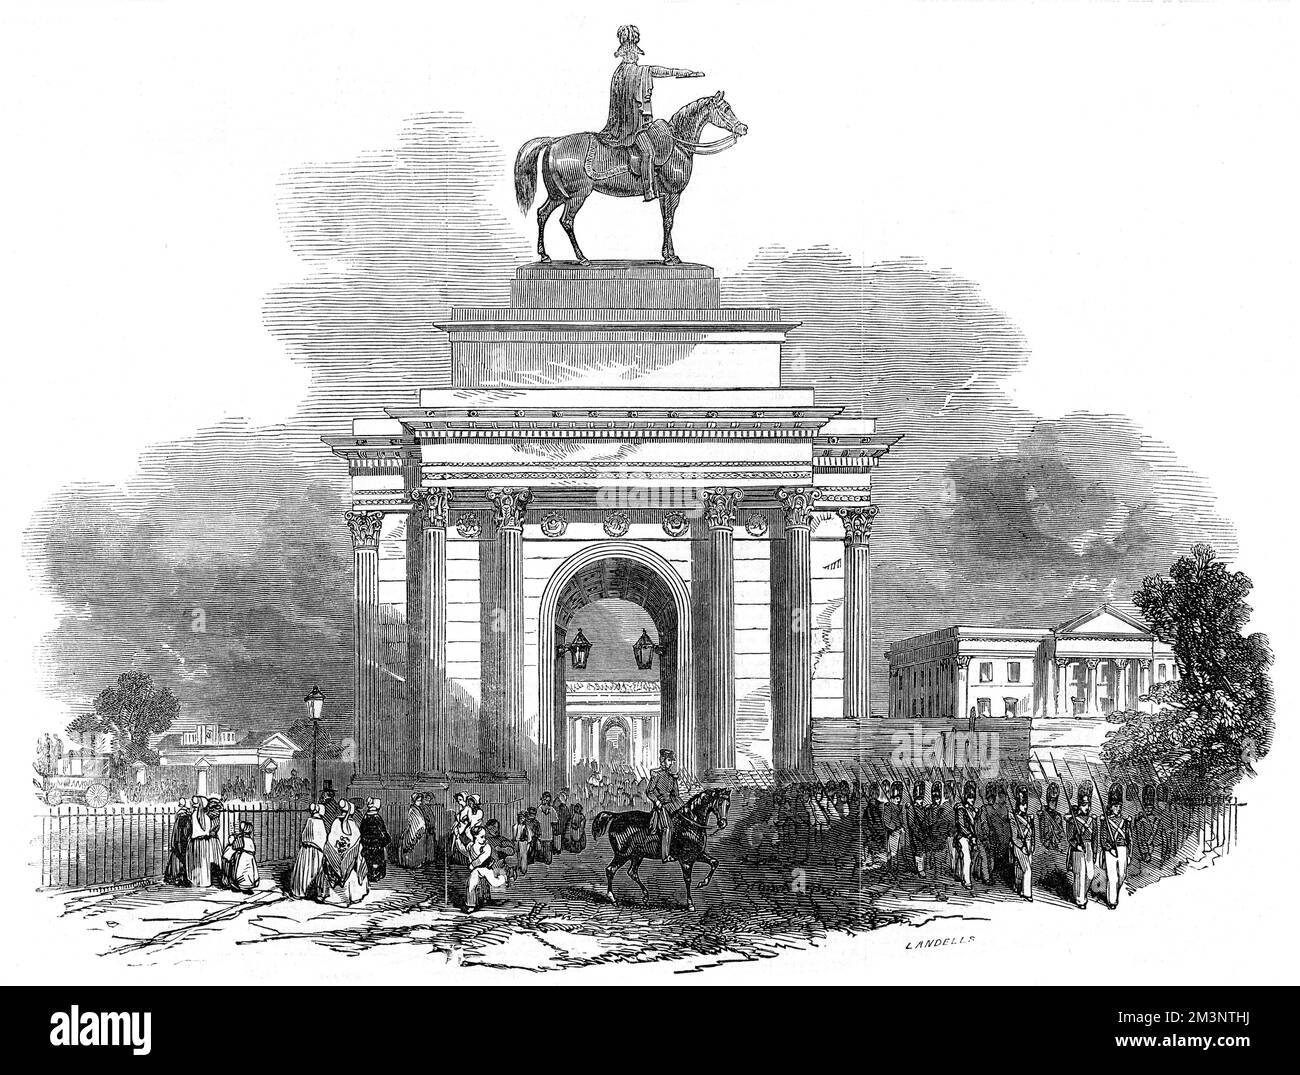 Die große Reiterstatue des Herzogs von Wellington von Matthew Cotes Wyatt auf dem Wellington Arch oder dem Constitution Arch in der Hyde Park Corner, wie sie aus Constitution Hill, London, ersichtlich ist. Datum: 1846 Stockfoto